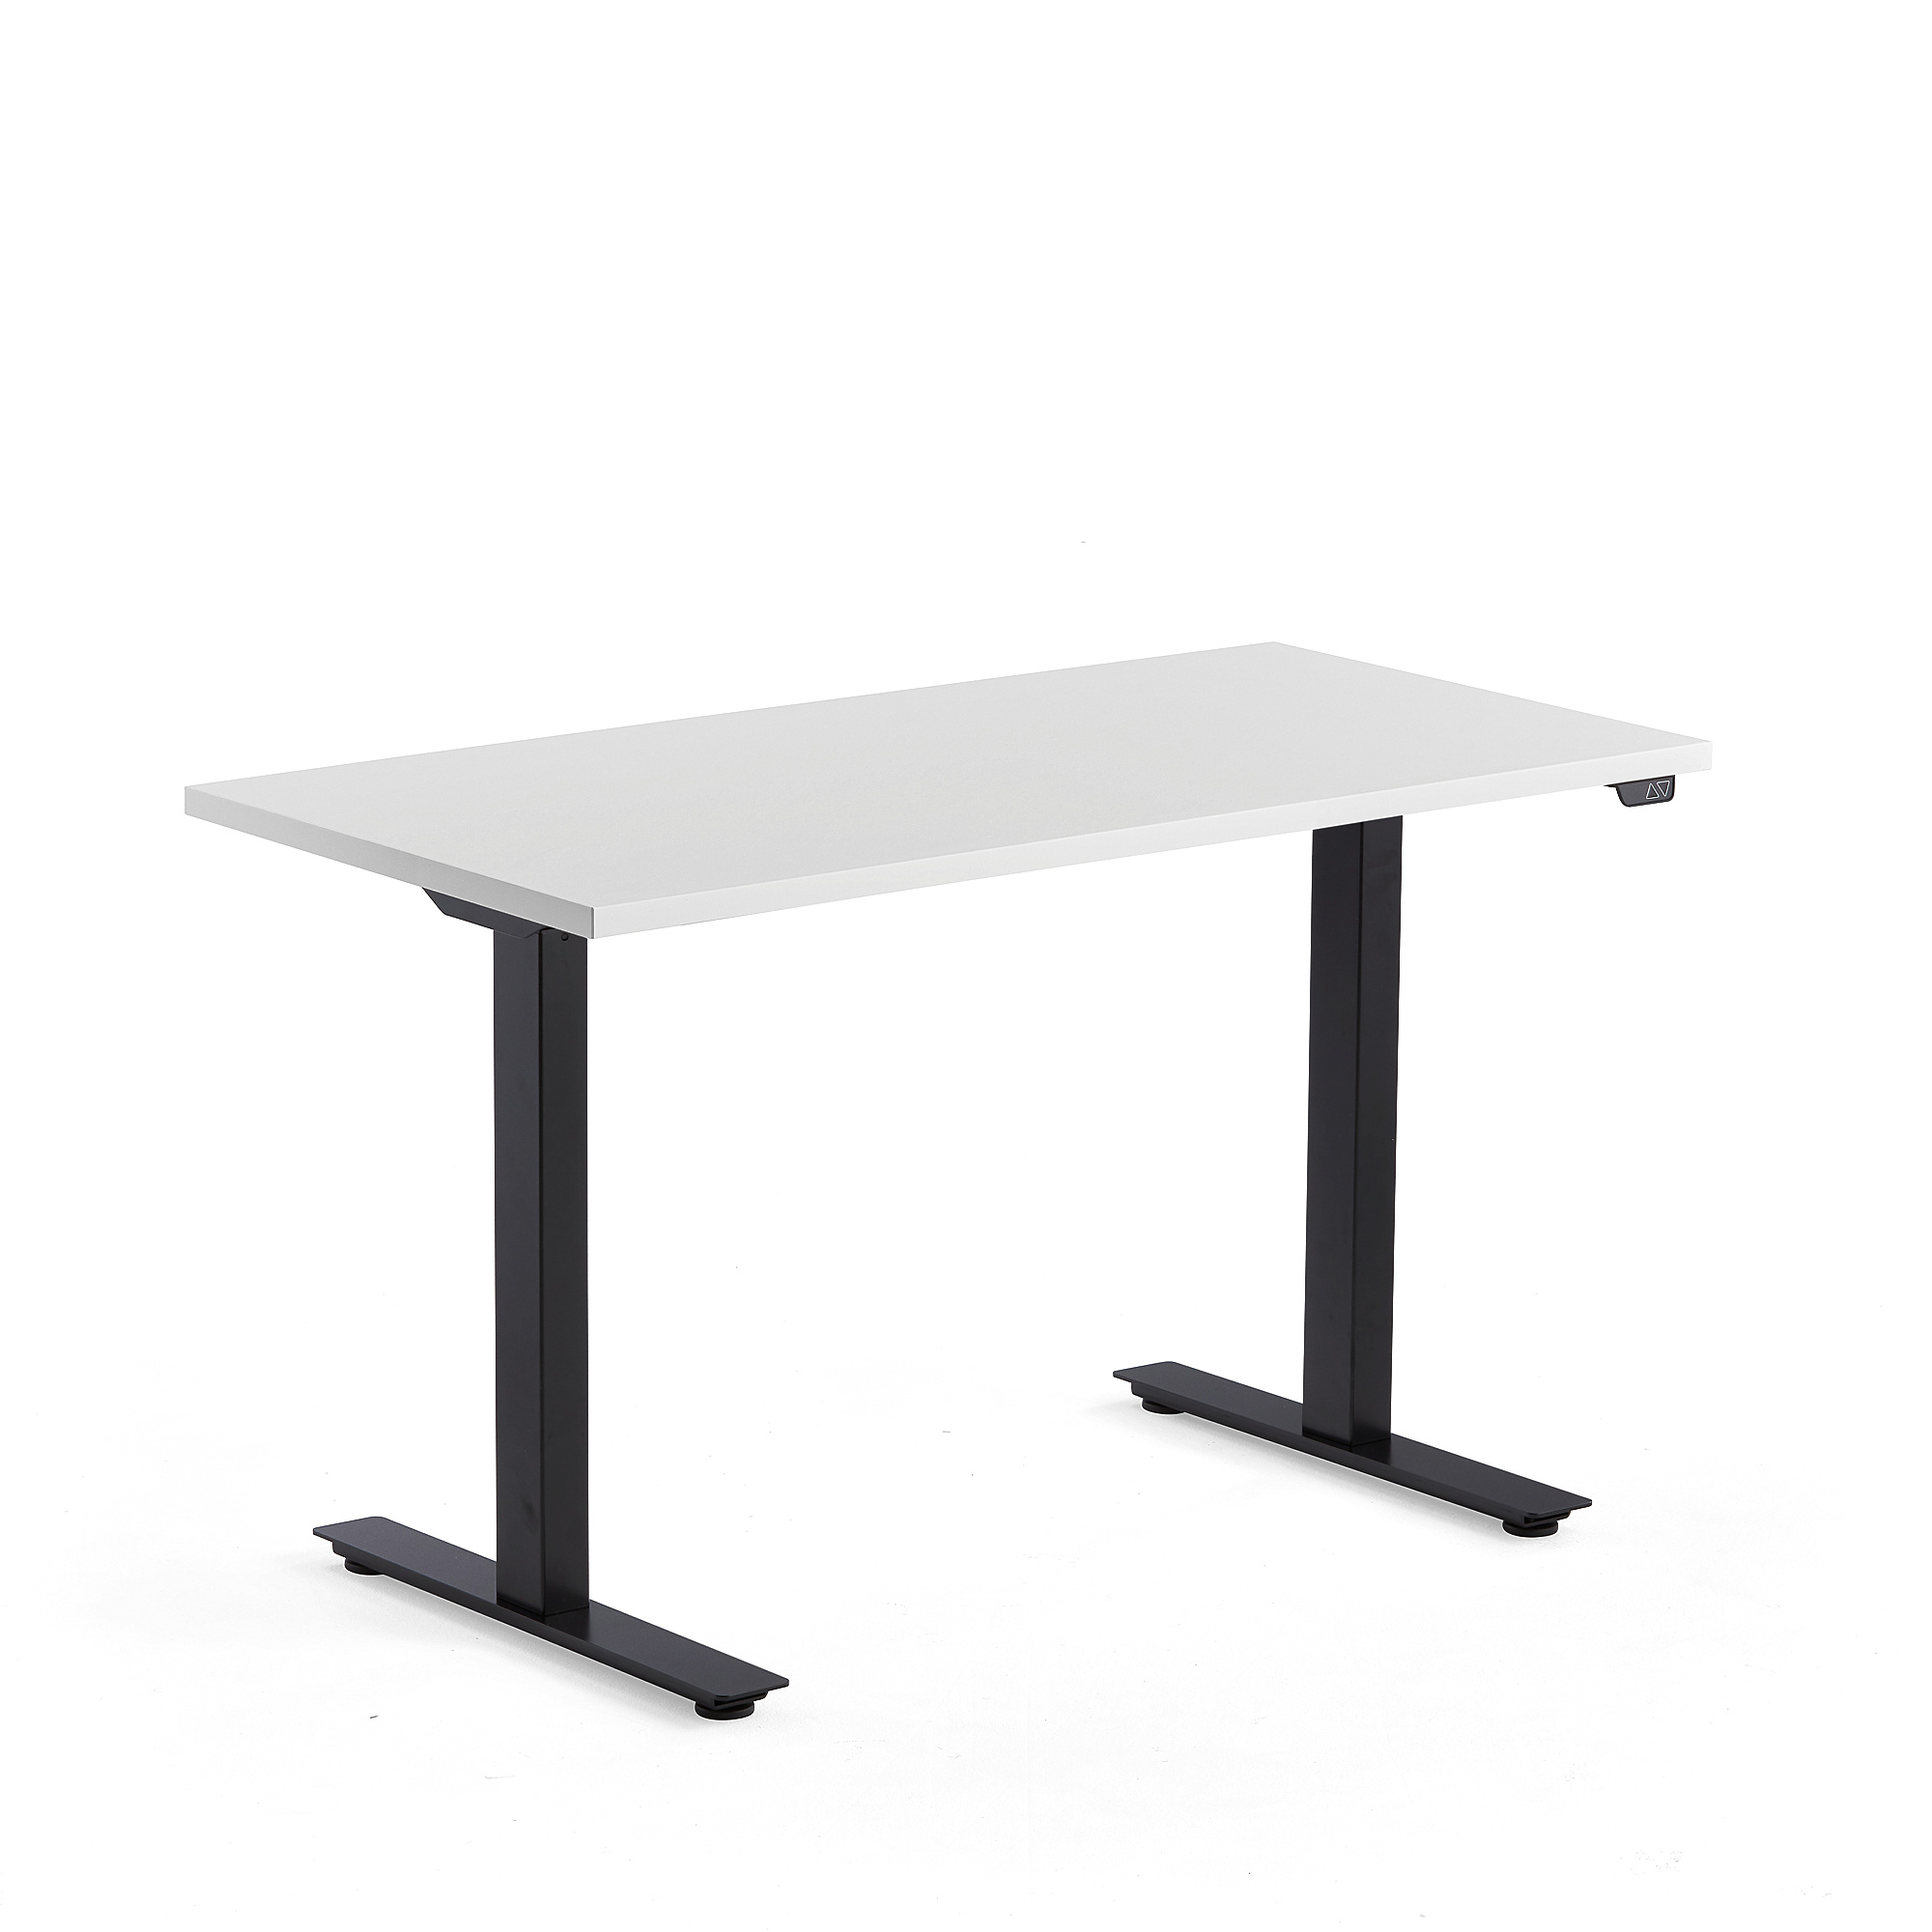 Výškově nastavitelný stůl MODULUS, 1200x600 mm, černý rám, bílá